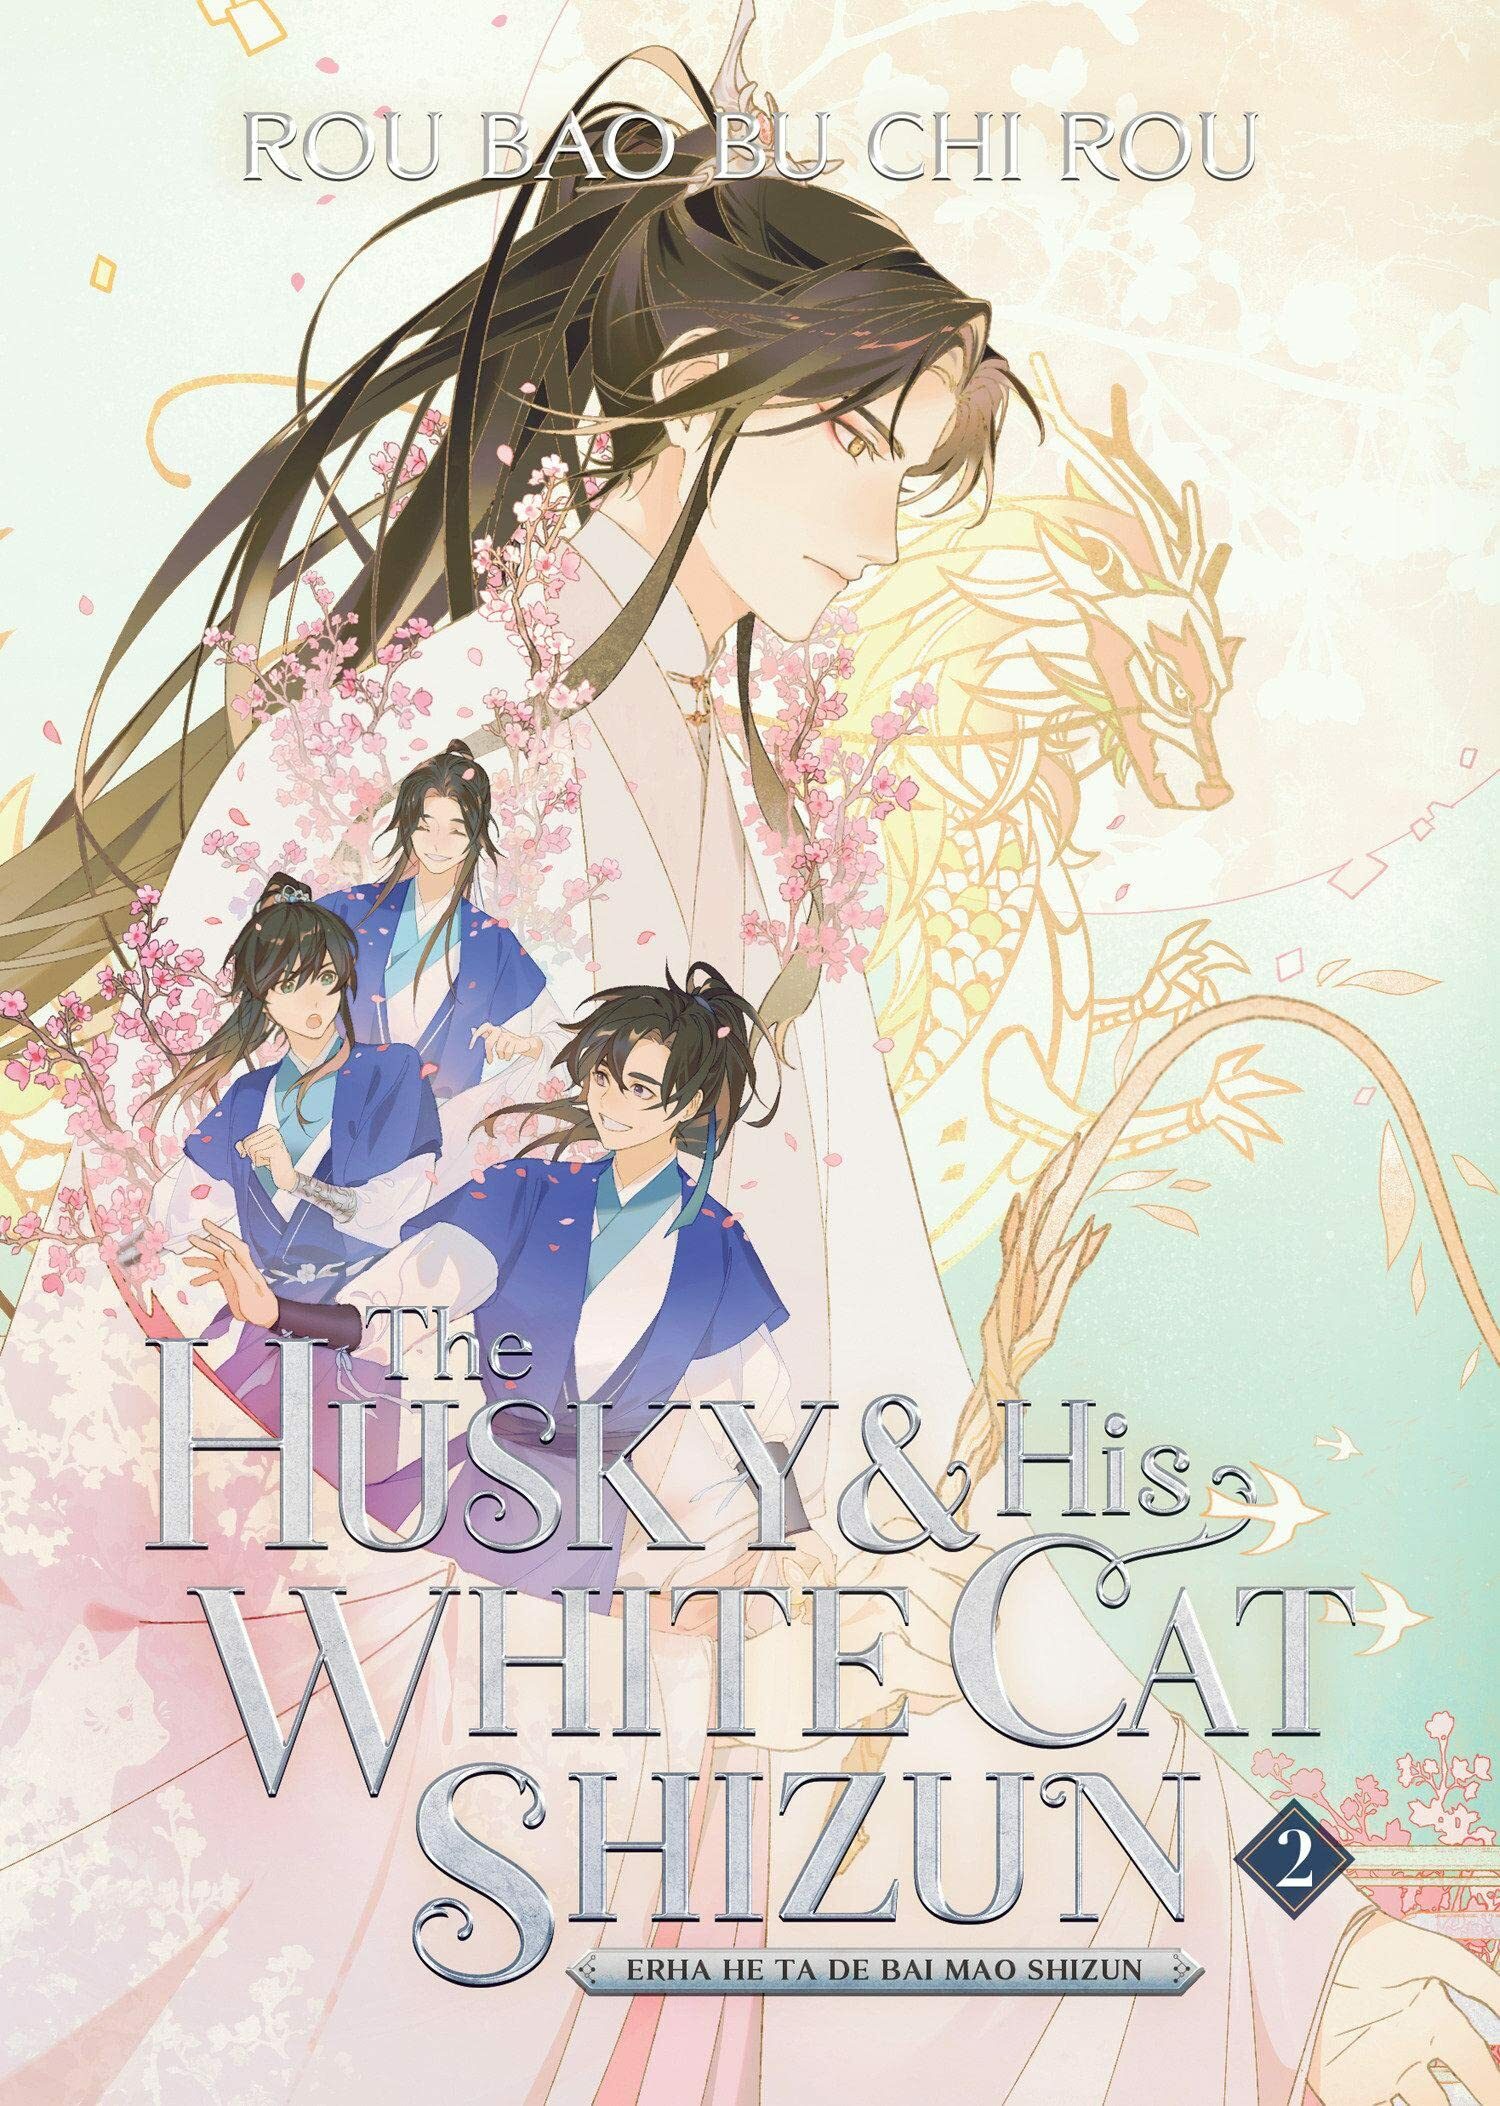 The Husky And His White Cat Shizun (Erha He Ta De Bai Mao Shizun Vol. 2) Rou Bao Bu Chi Rou